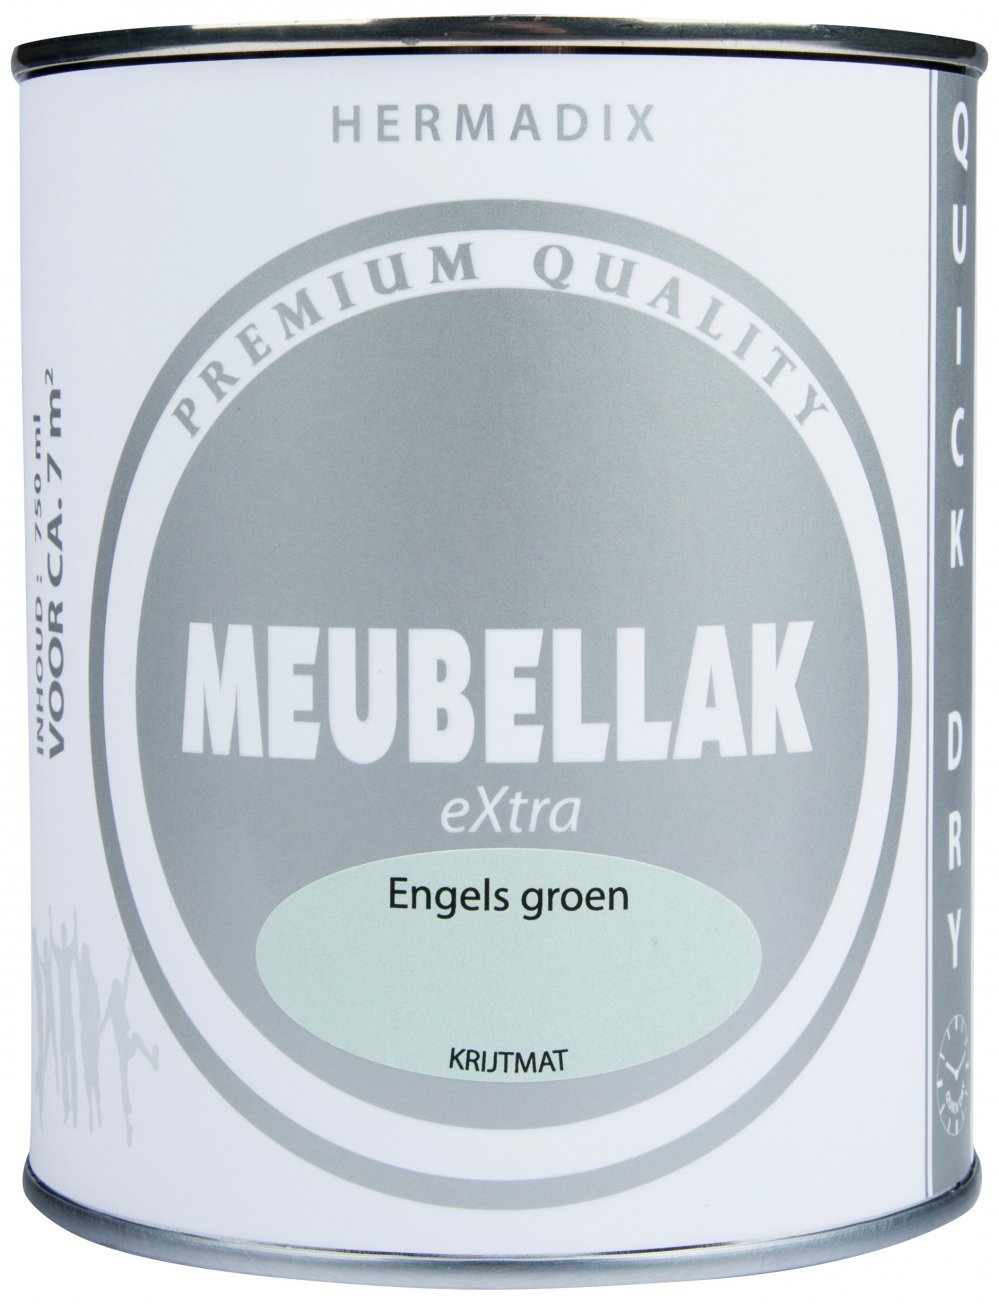 hermadix-meubellak-extra-engels-groen-krijtmat-verfcompleet